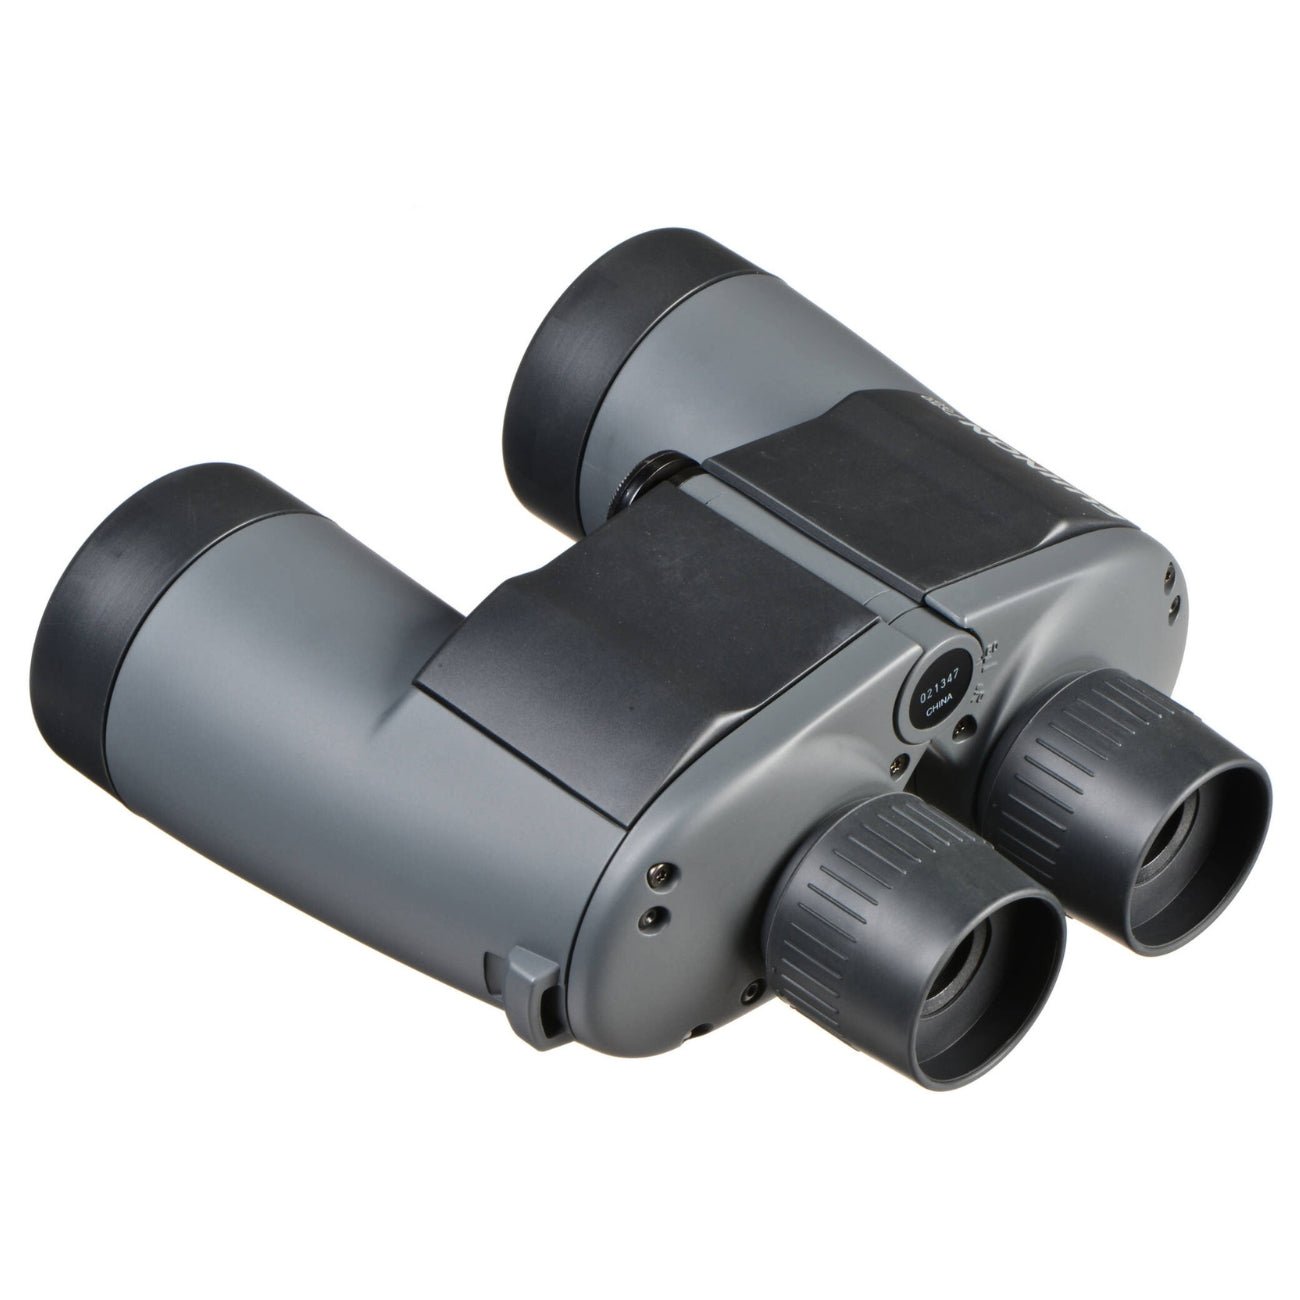 Fujinon 7x50 WP-XL Mariner Binocular / marine binoculars 7x50, boat binoculars, marine binoculars with compass